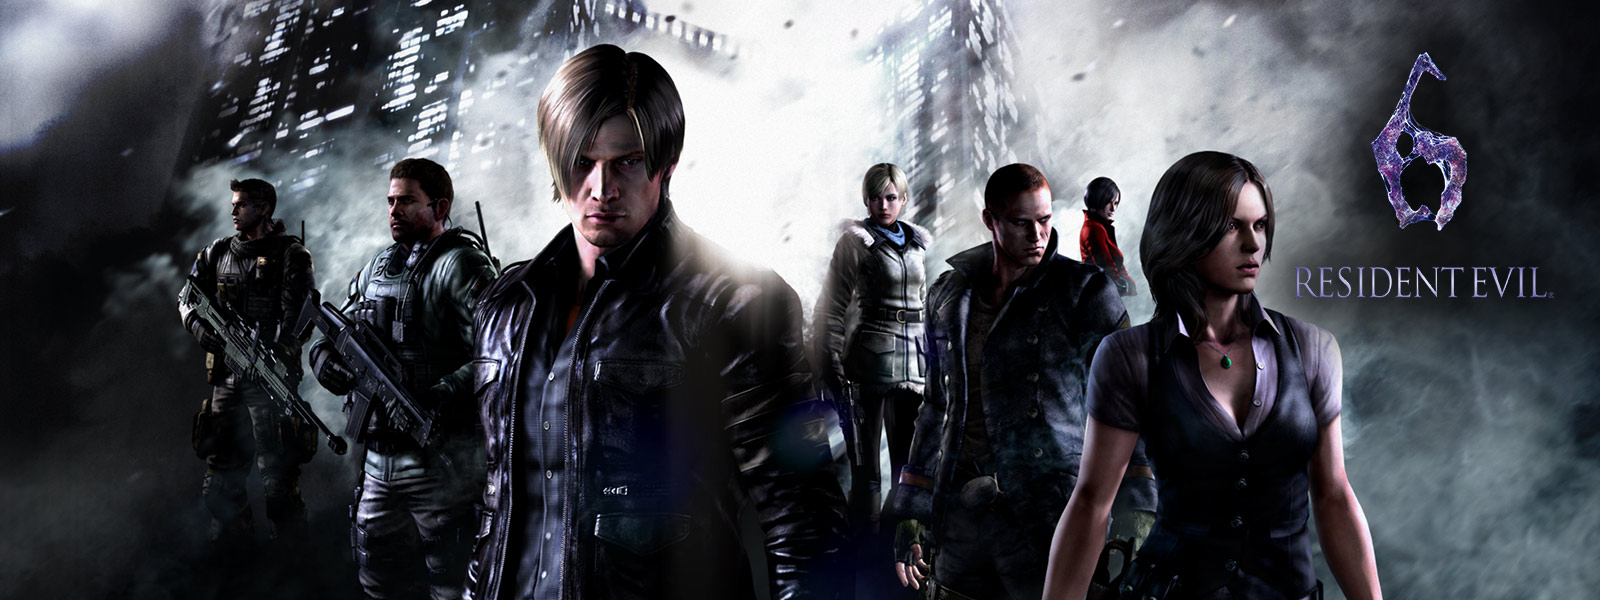 Resident Evil 6: Alla Resident Evil-karaktärer framför olycksbådande skyskrapor